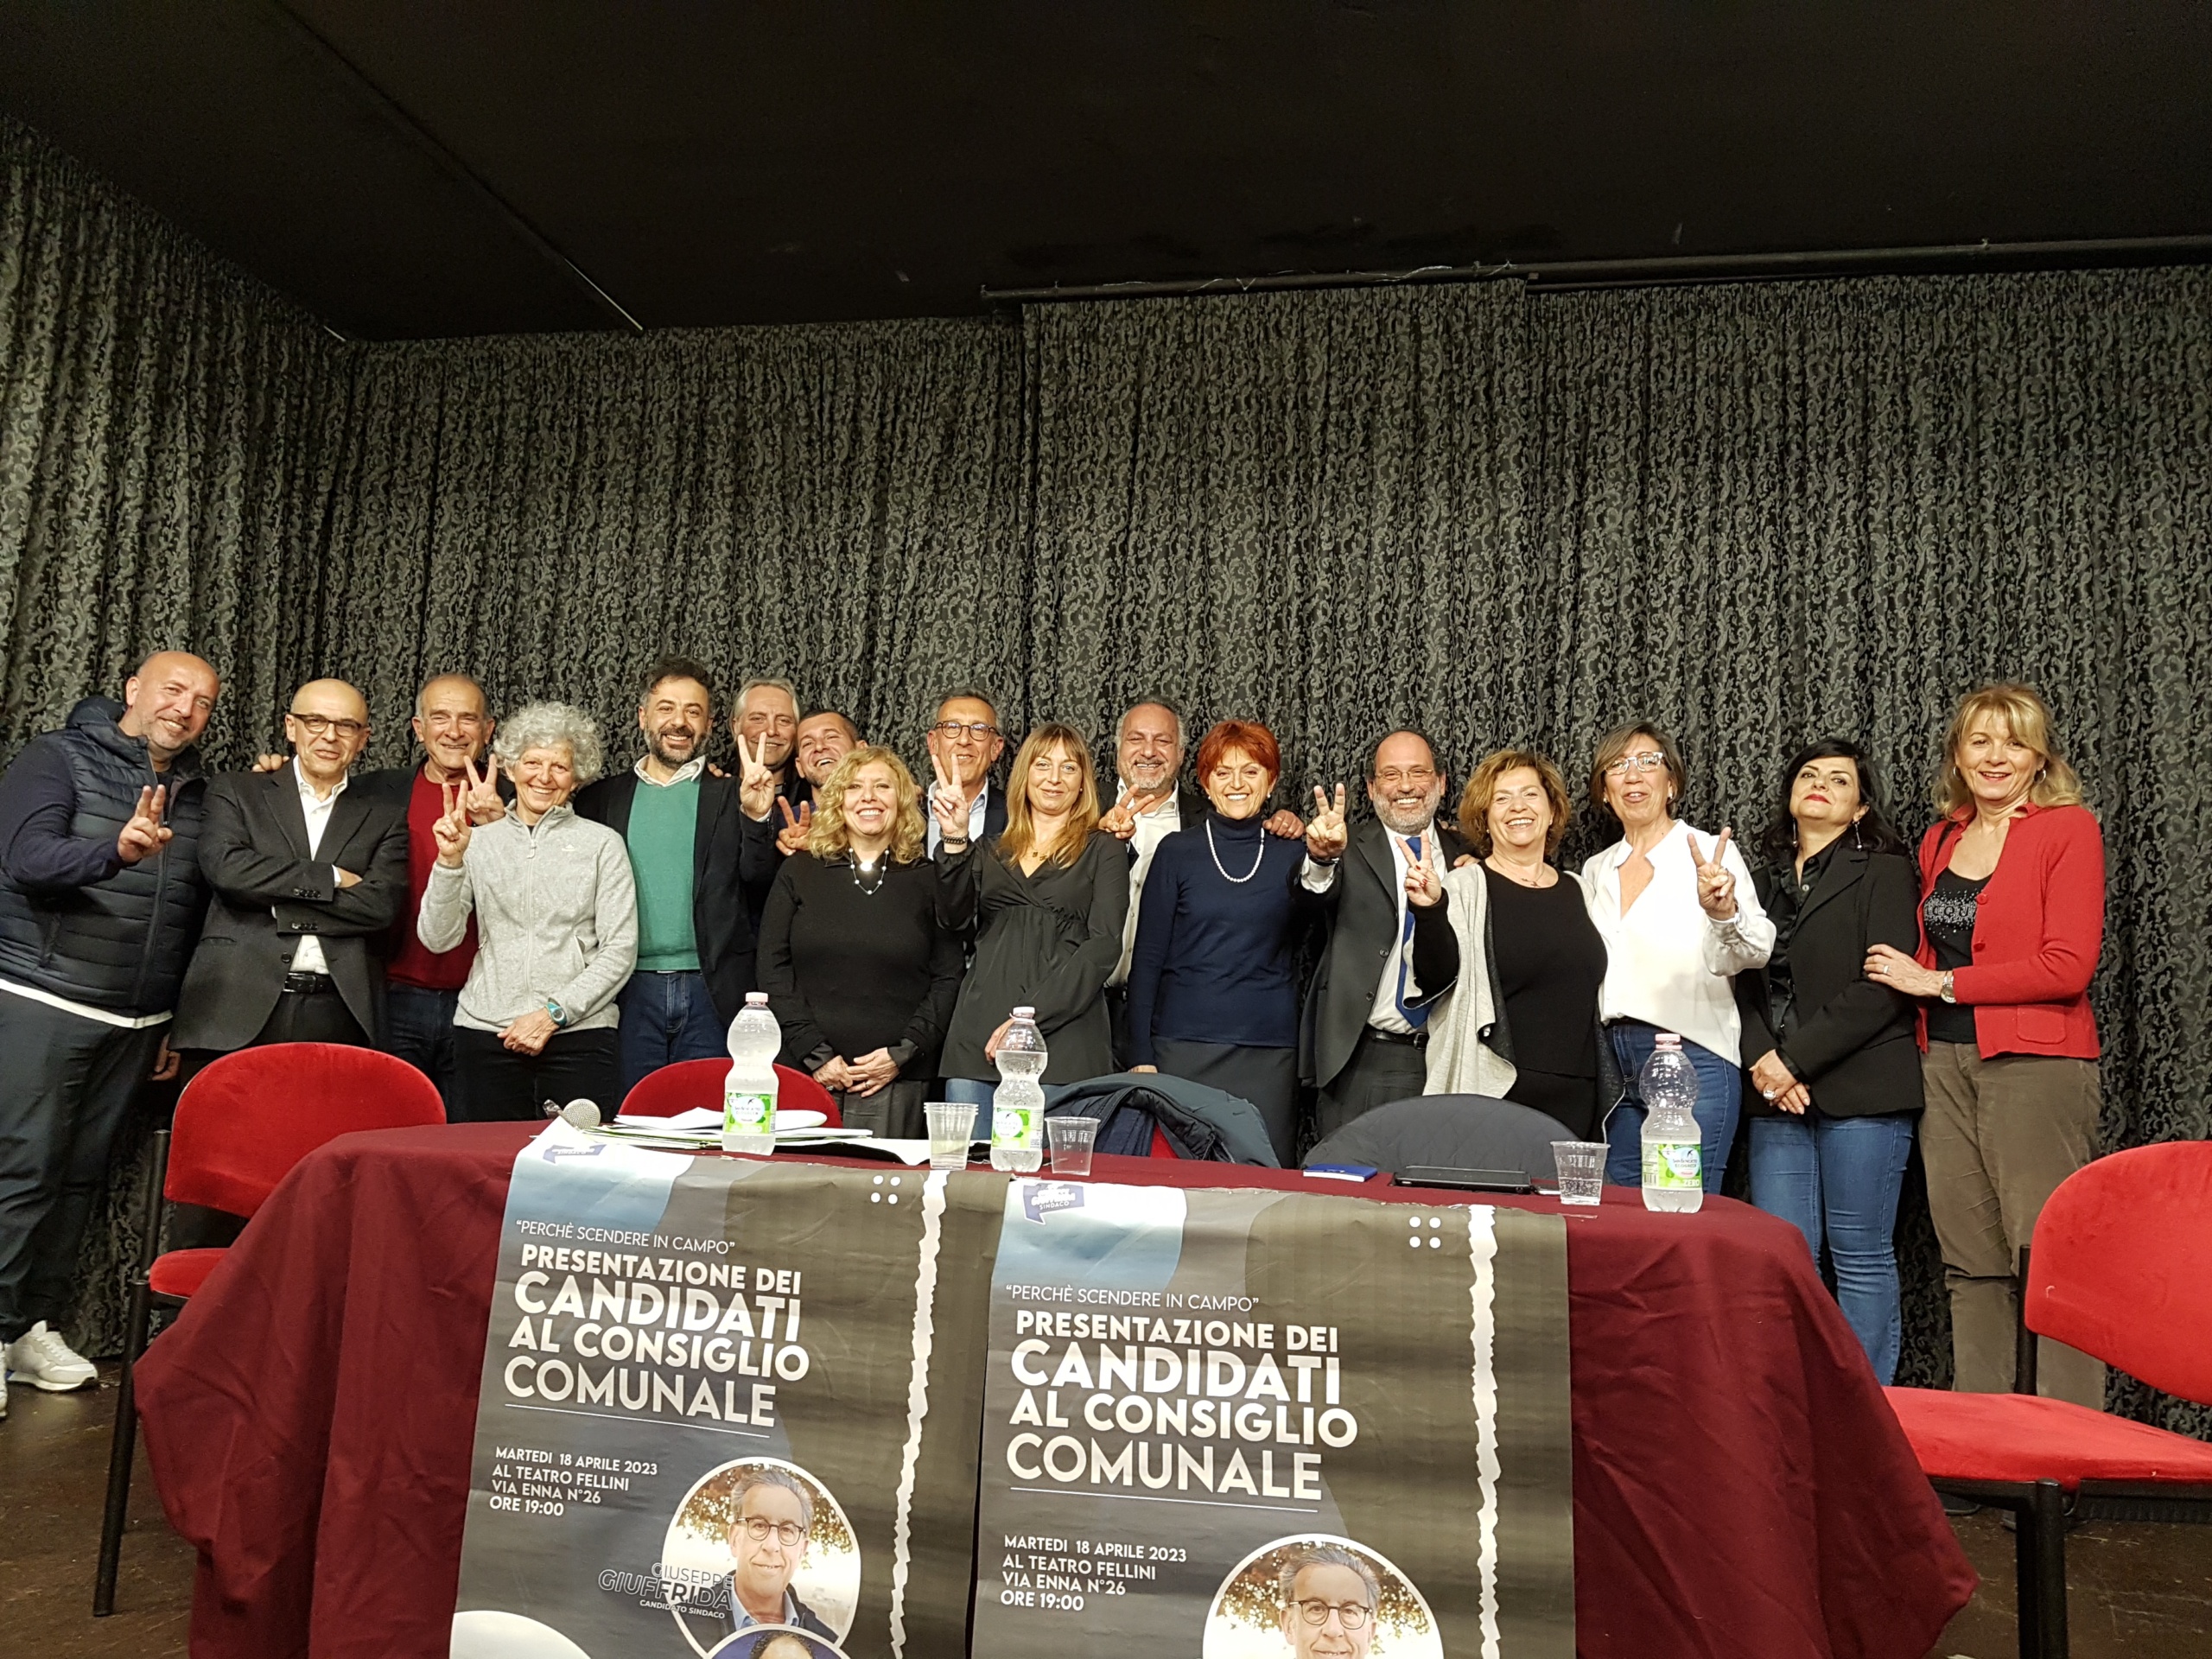 Catania – Il candidato sindaco Giuseppe Giuffrida declina l’invito del candidato Lipera